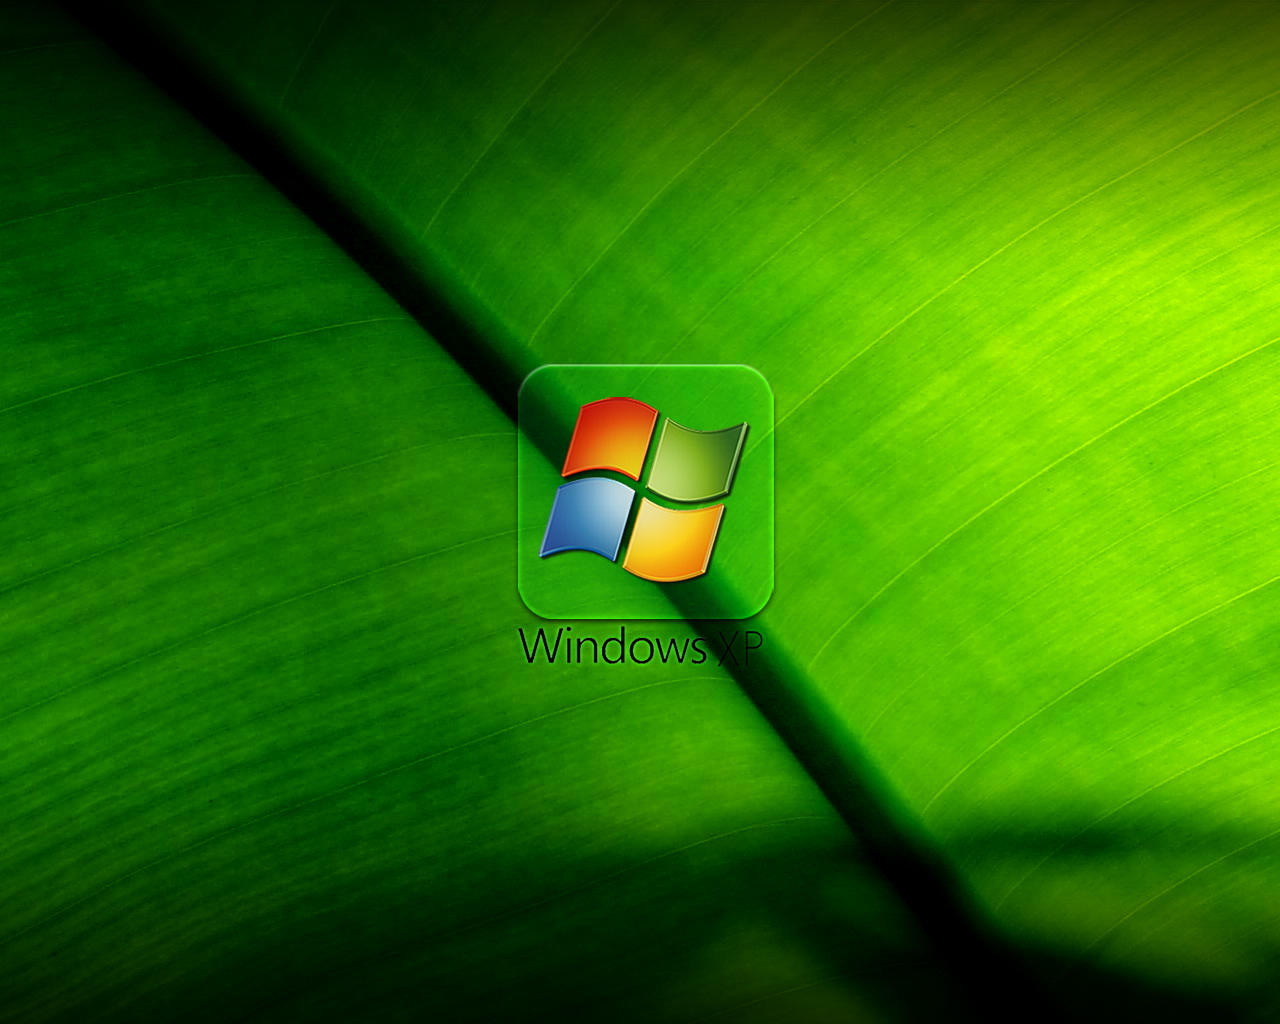 Bạn thích màu xanh lá cây và muốn tìm một hình nền XP mang màu này để làm nền cho máy tính của mình? Trang web của chúng tôi cung cấp rất nhiều hình nền XP màu xanh lá cây đẹp mắt để bạn lựa chọn.